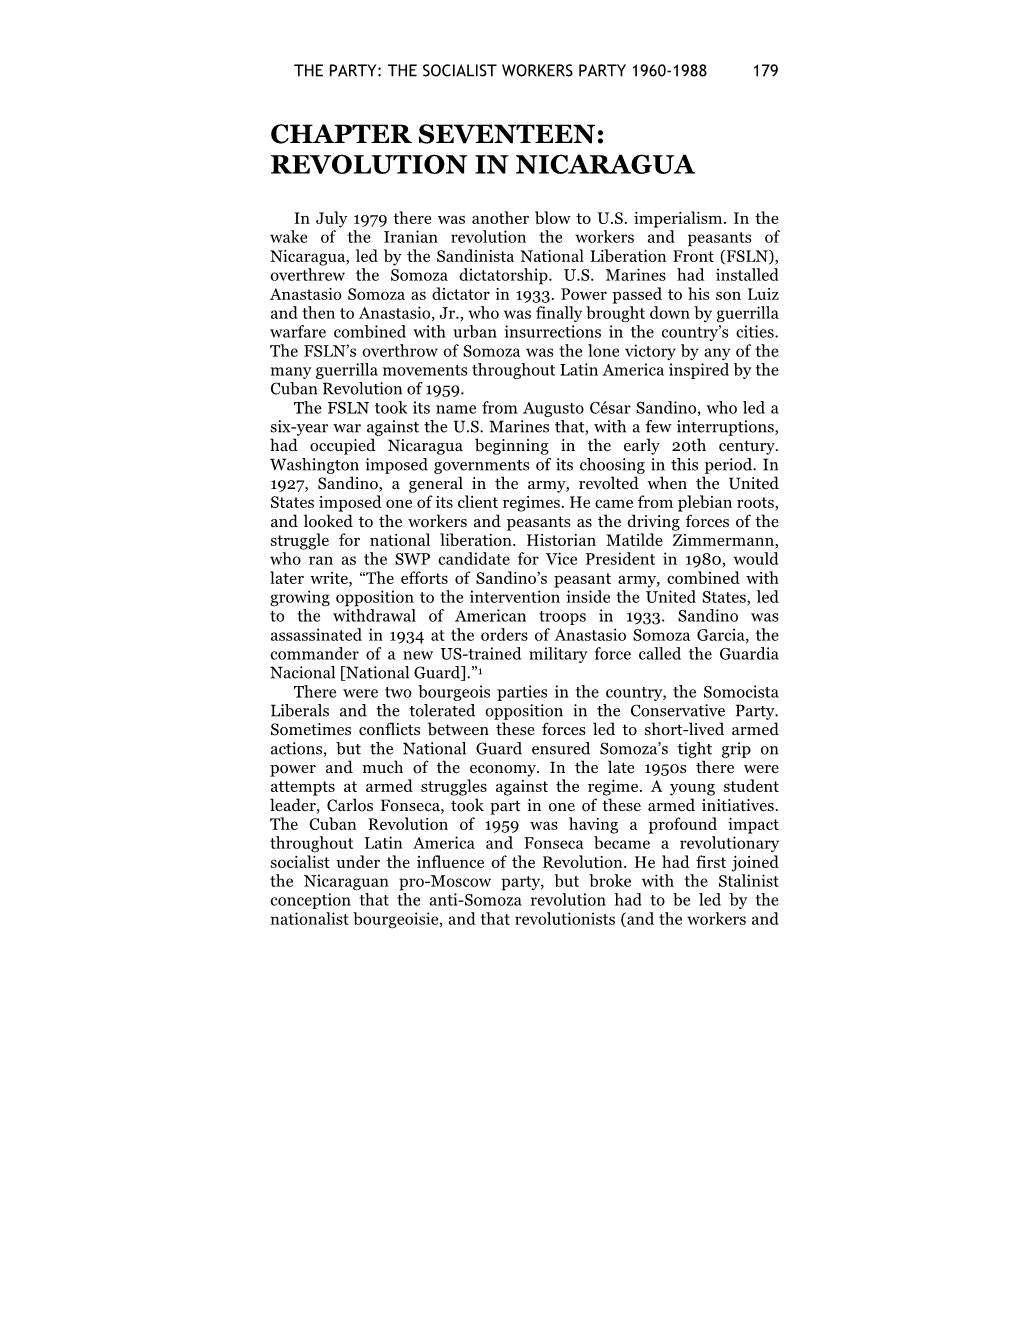 Chapter Seventeen: Revolution in Nicaragua